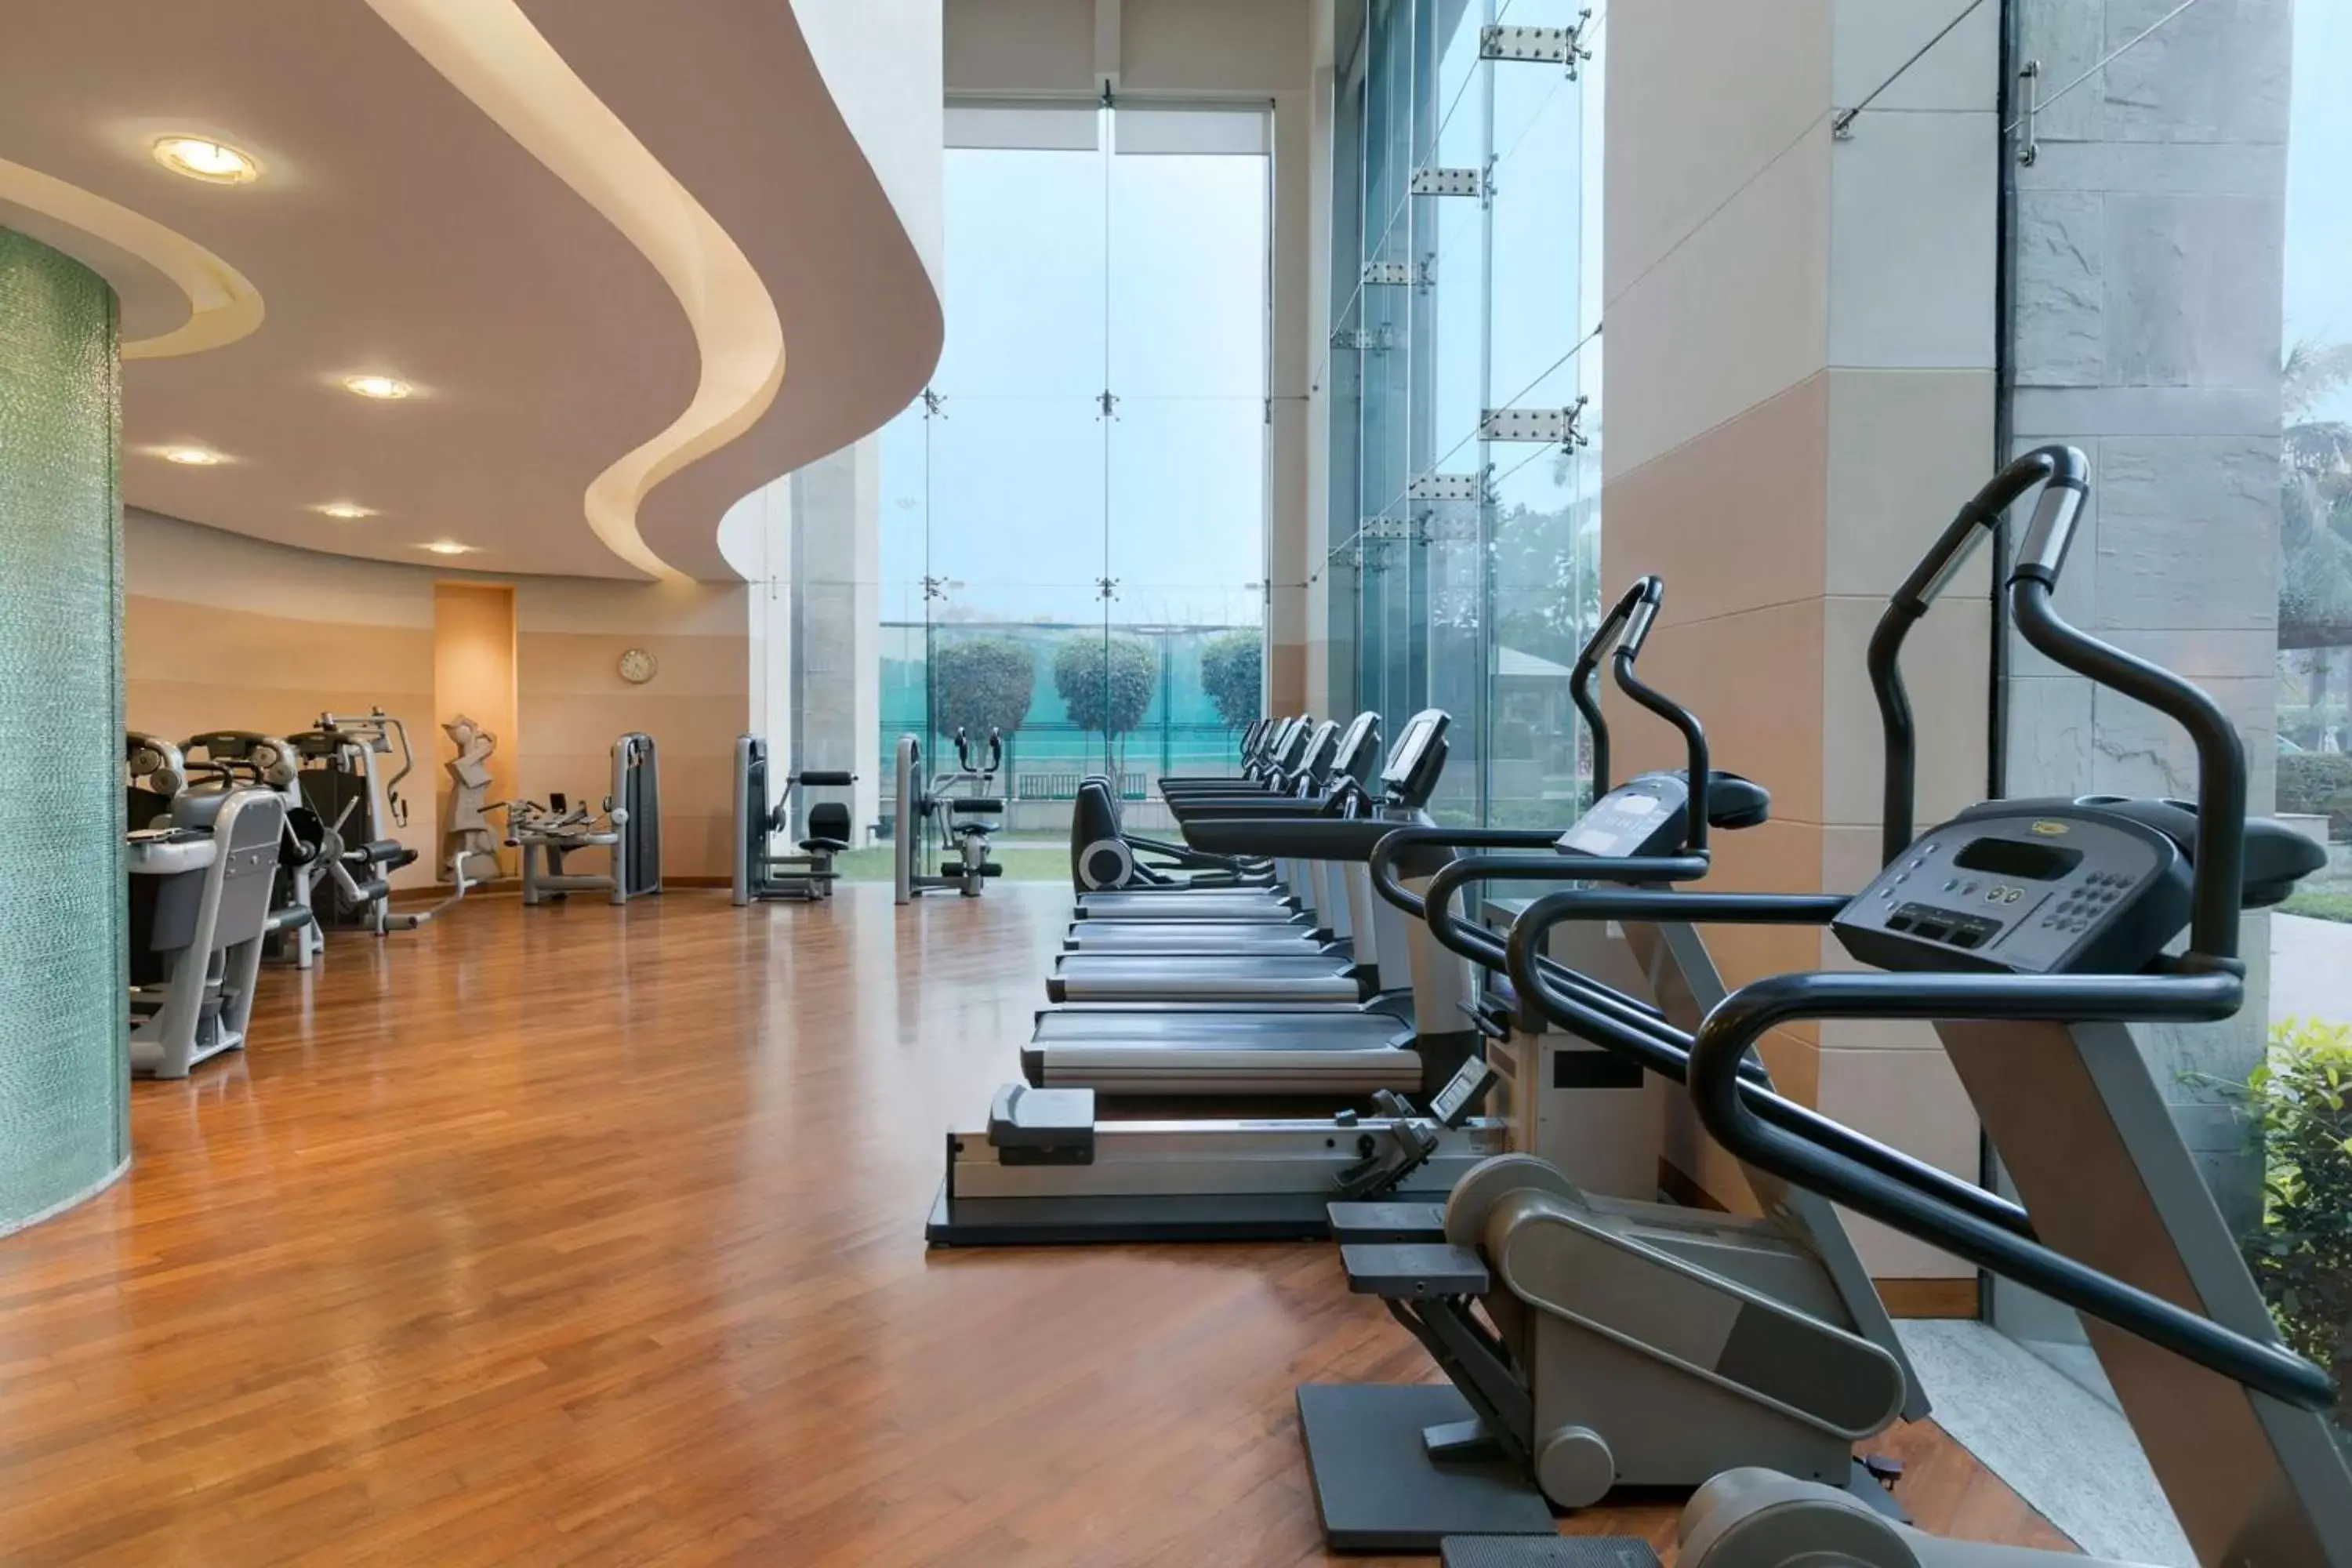 Fitness centre/facilities, Fitness Center/Facilities in Hyatt Regency Kolkata